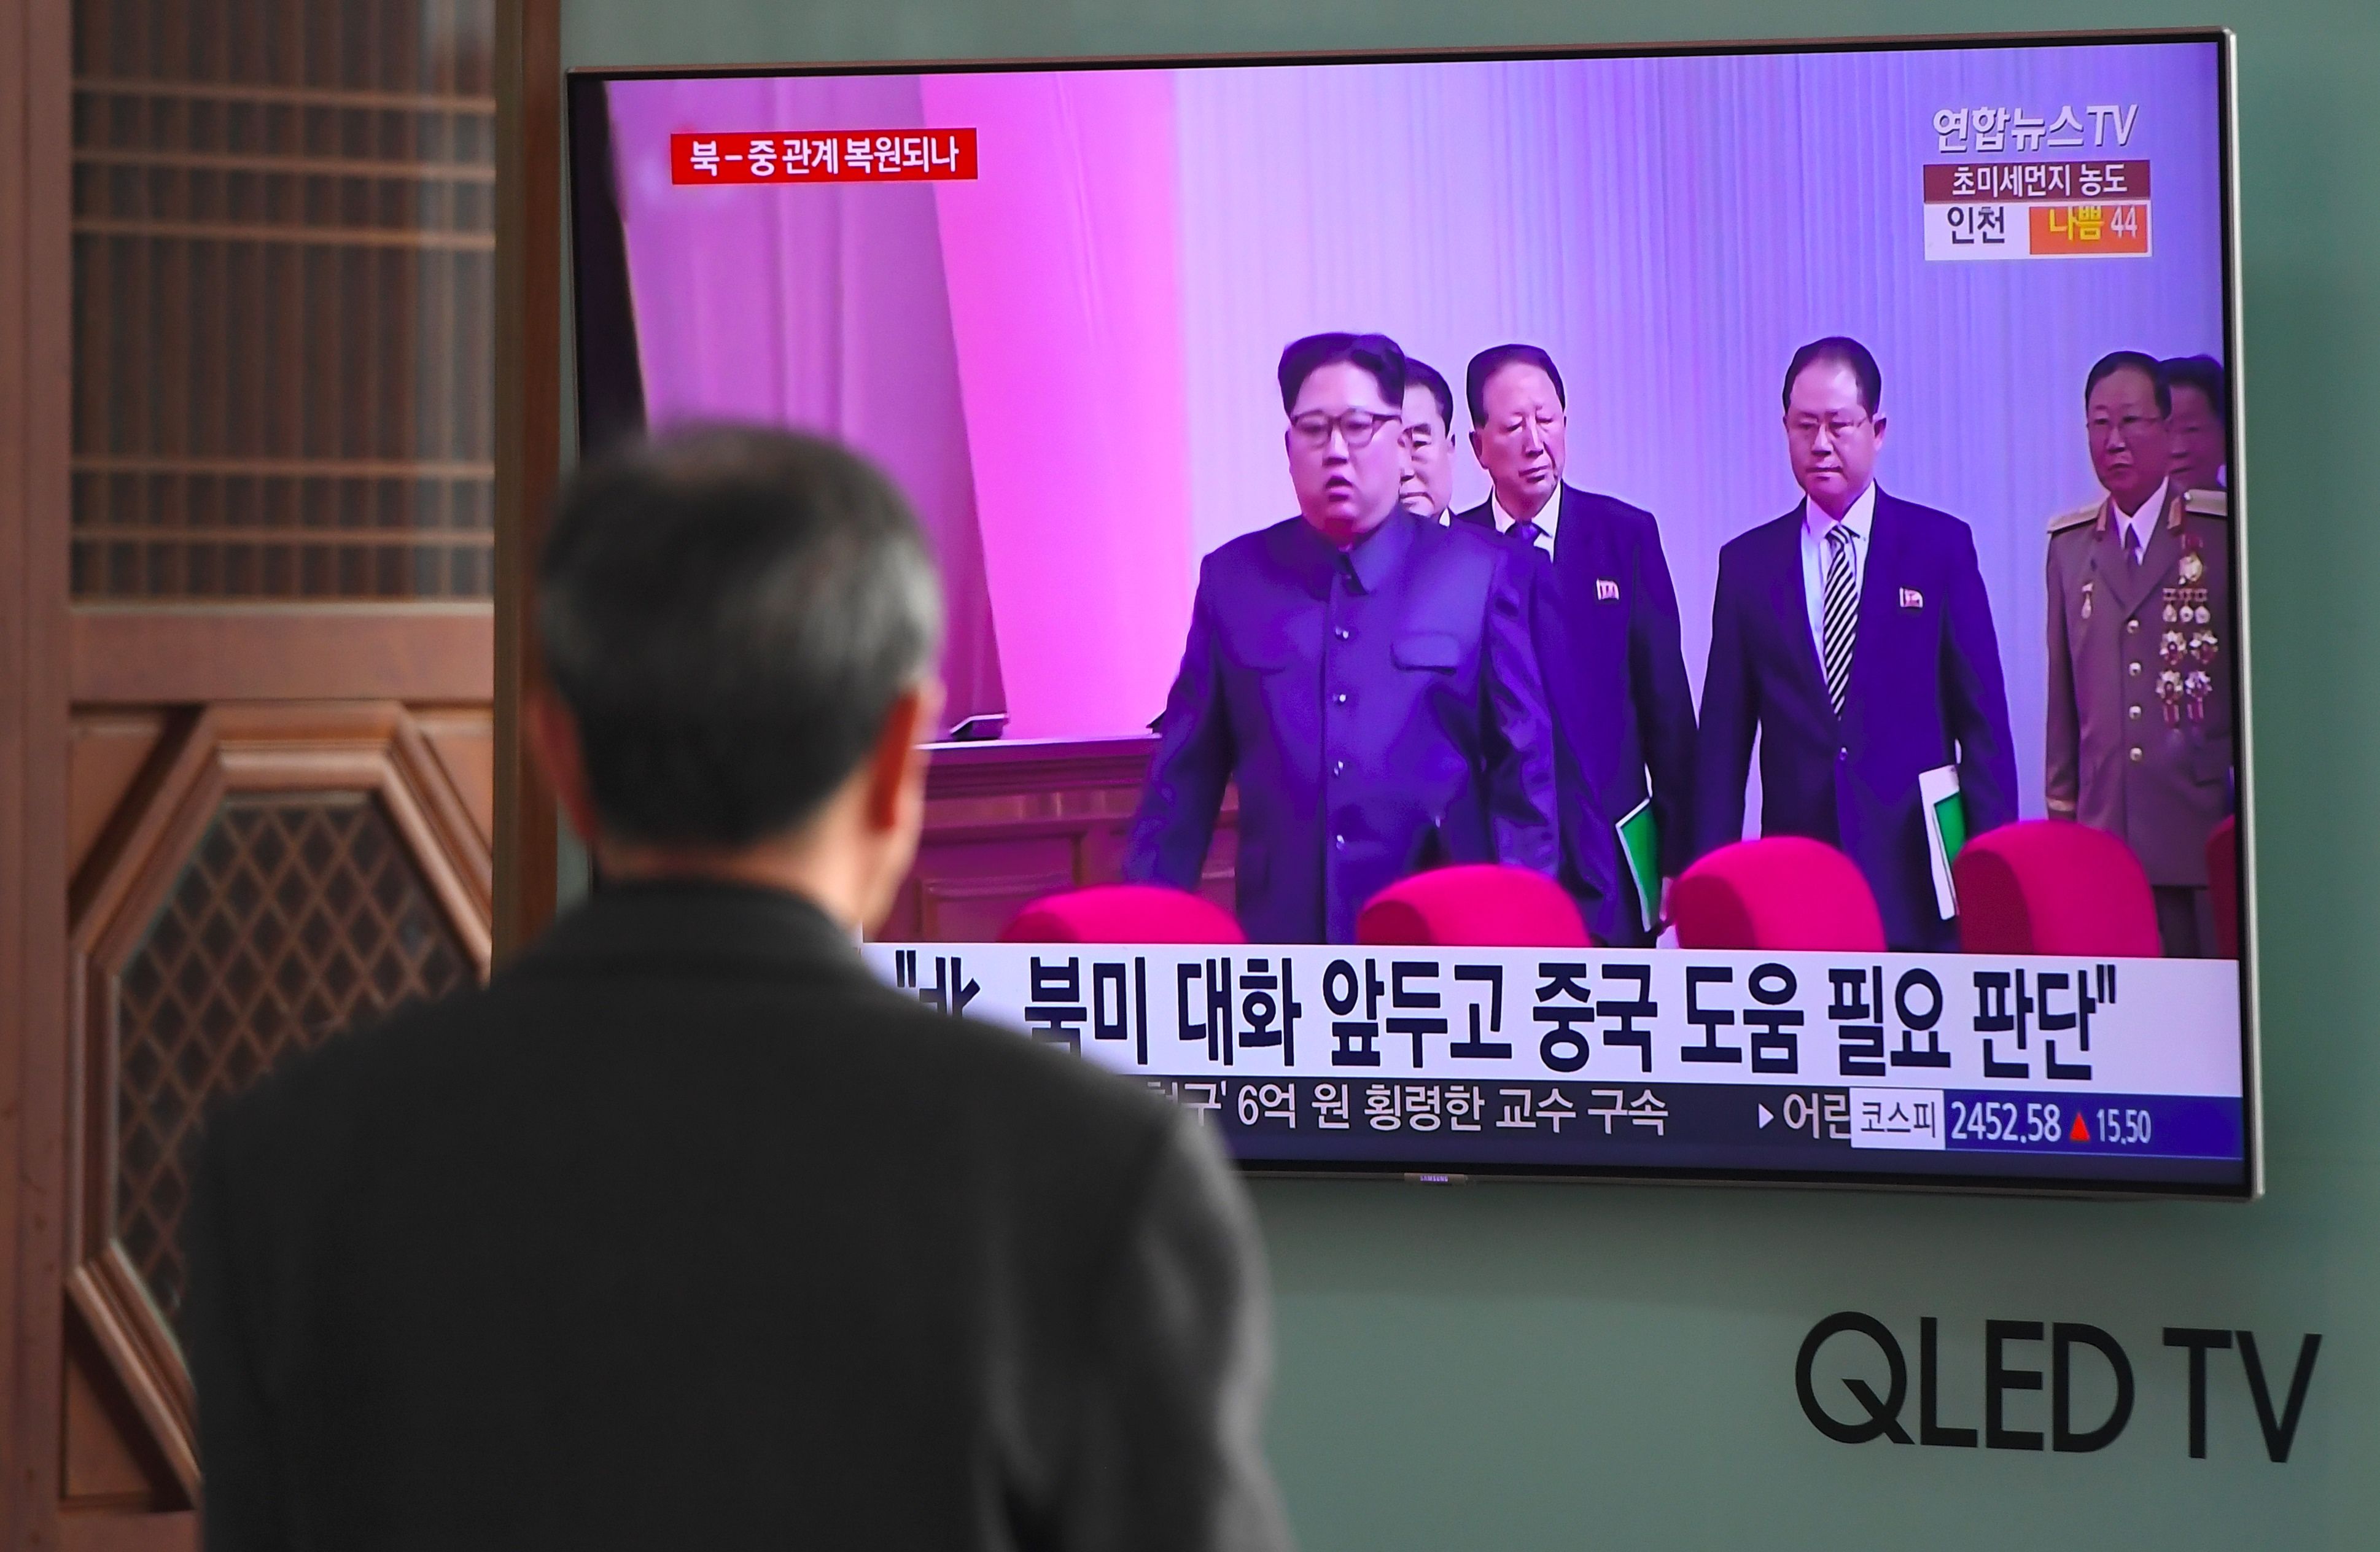 تقرير إعلامى يشير لزيارة الزعيم الكورى الشمالى إلى الصين